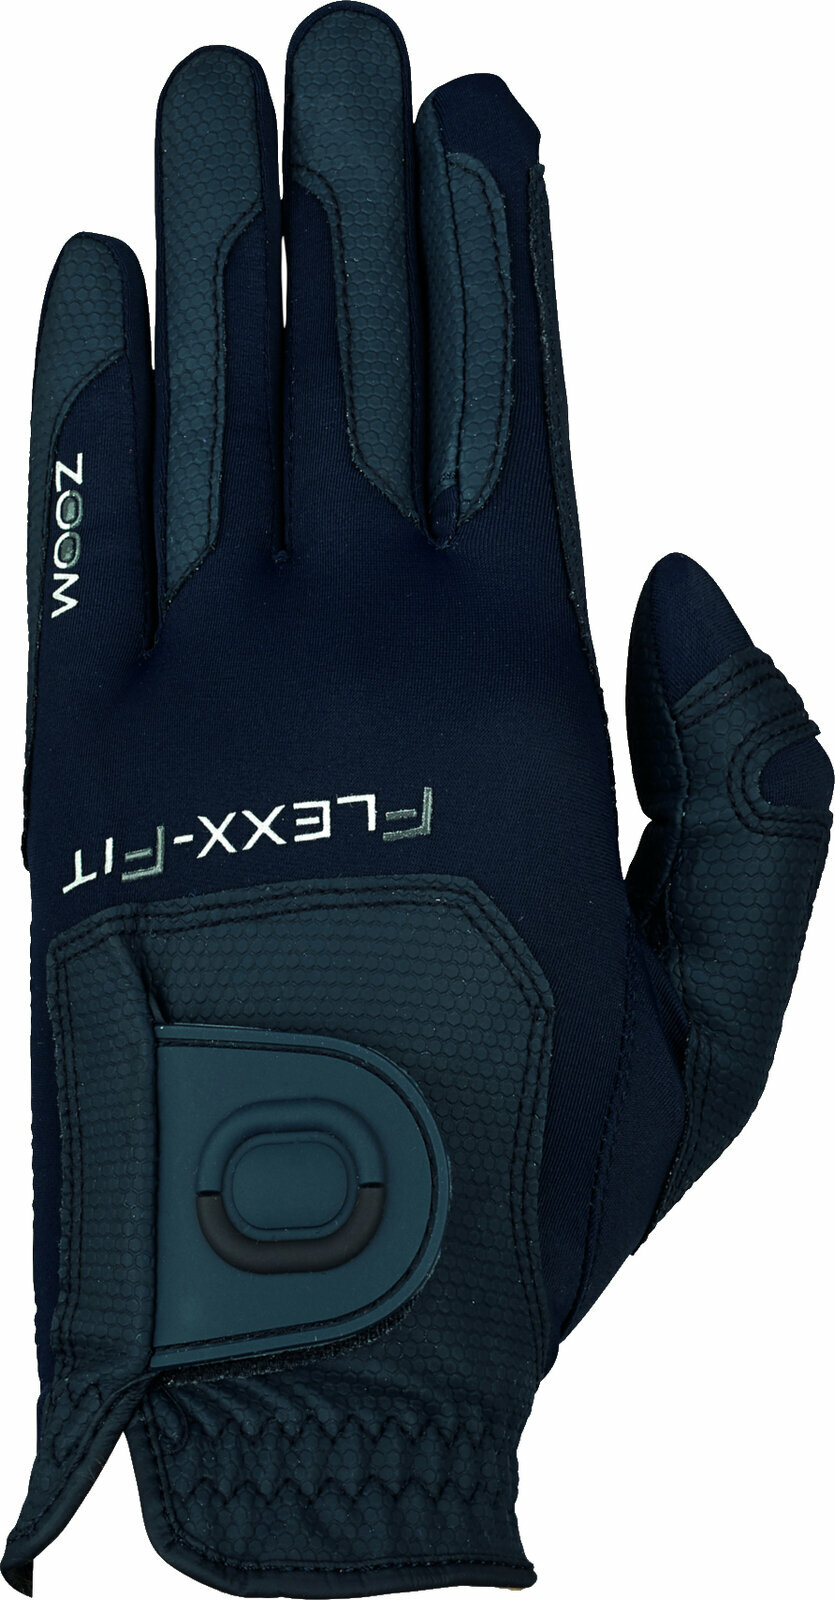 Handsker Zoom Gloves Weather Style Mens Golf Glove Handsker